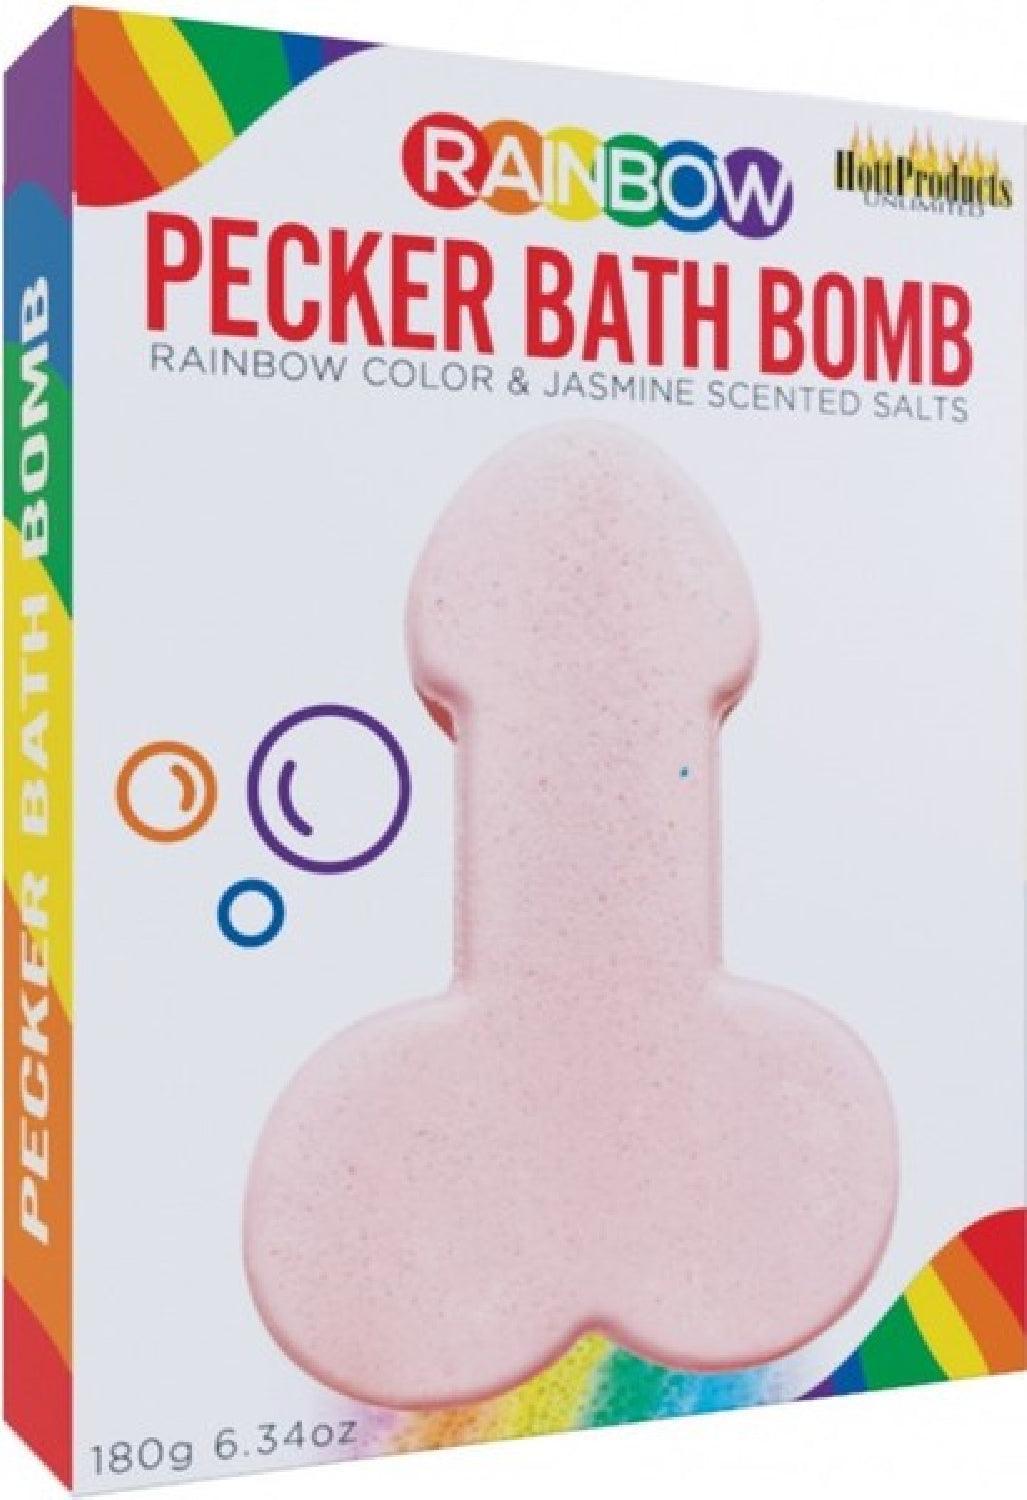 Pecker Bath Balm - Take A Peek